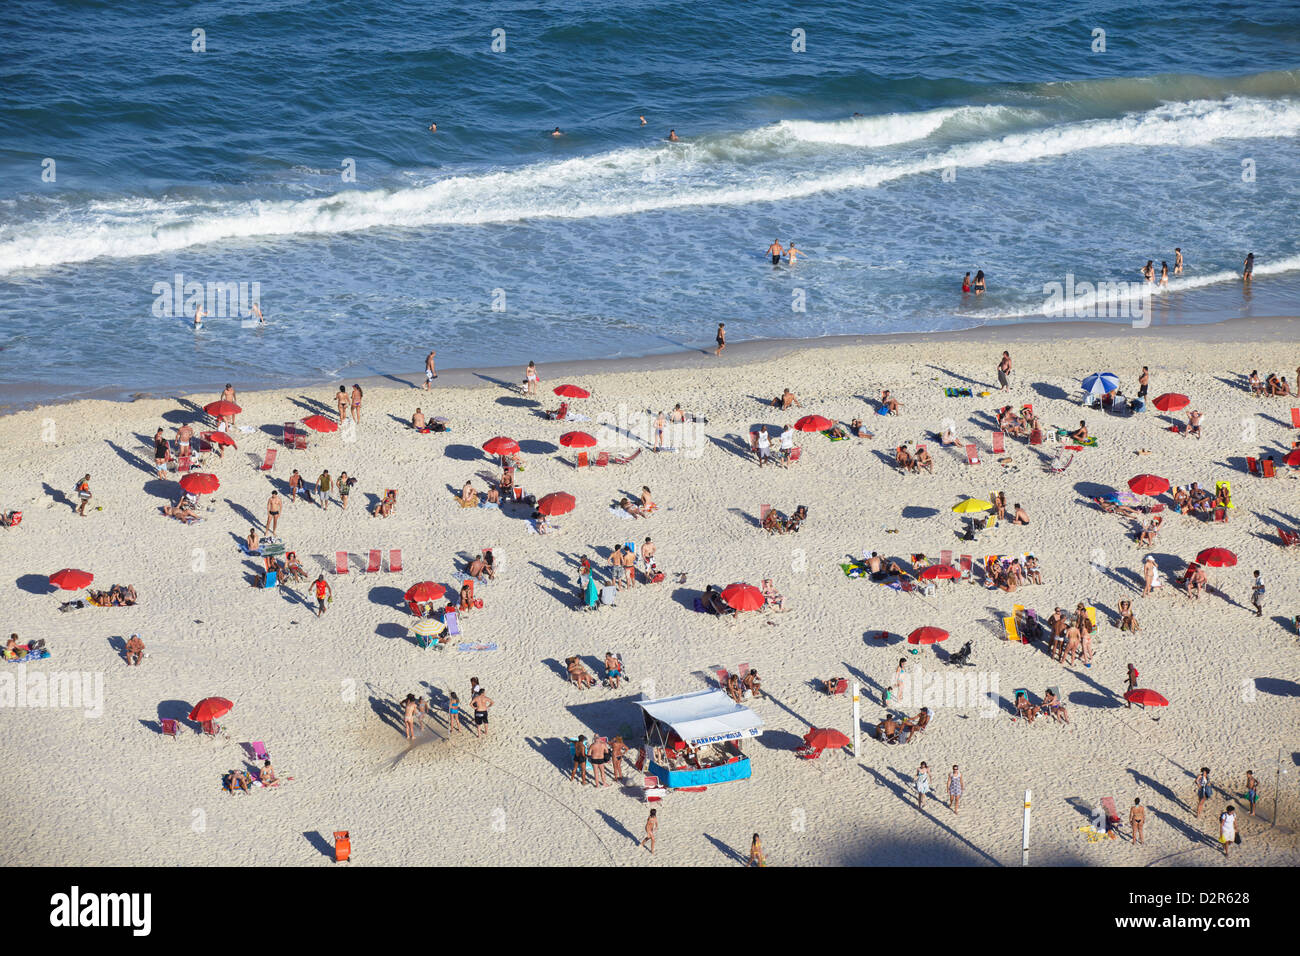 View of Copacabana beach, Rio de Janeiro, Brazil, South America Stock Photo